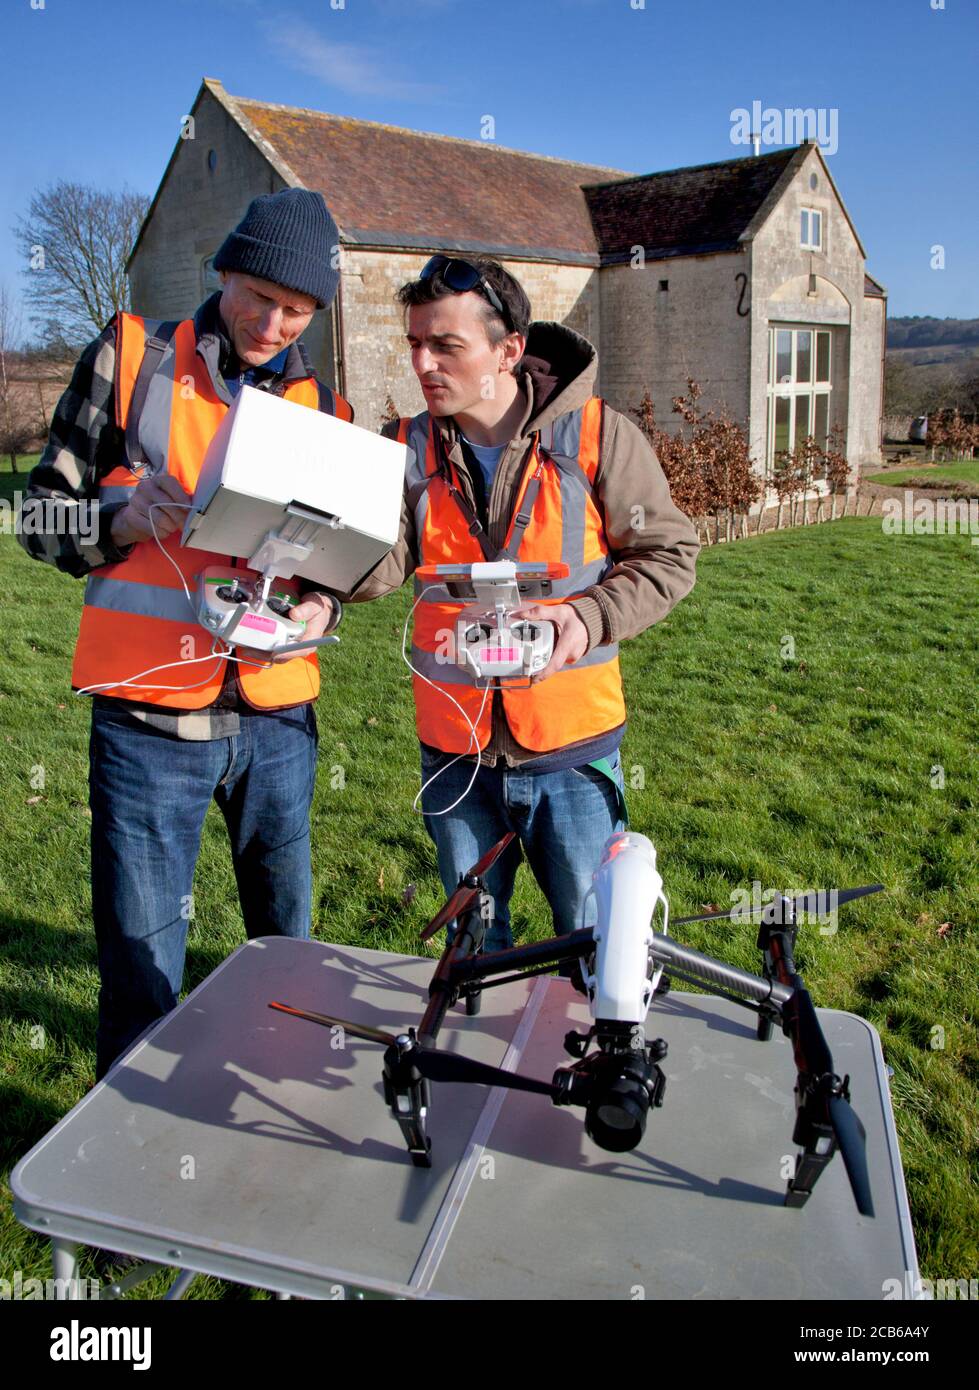 Zwei Männer bereiten sich darauf vor, eine Drohne mit einer Kamera zu fliegen Über einen privaten Garten und umgebaute Scheune in den Cotswolds Stockfoto